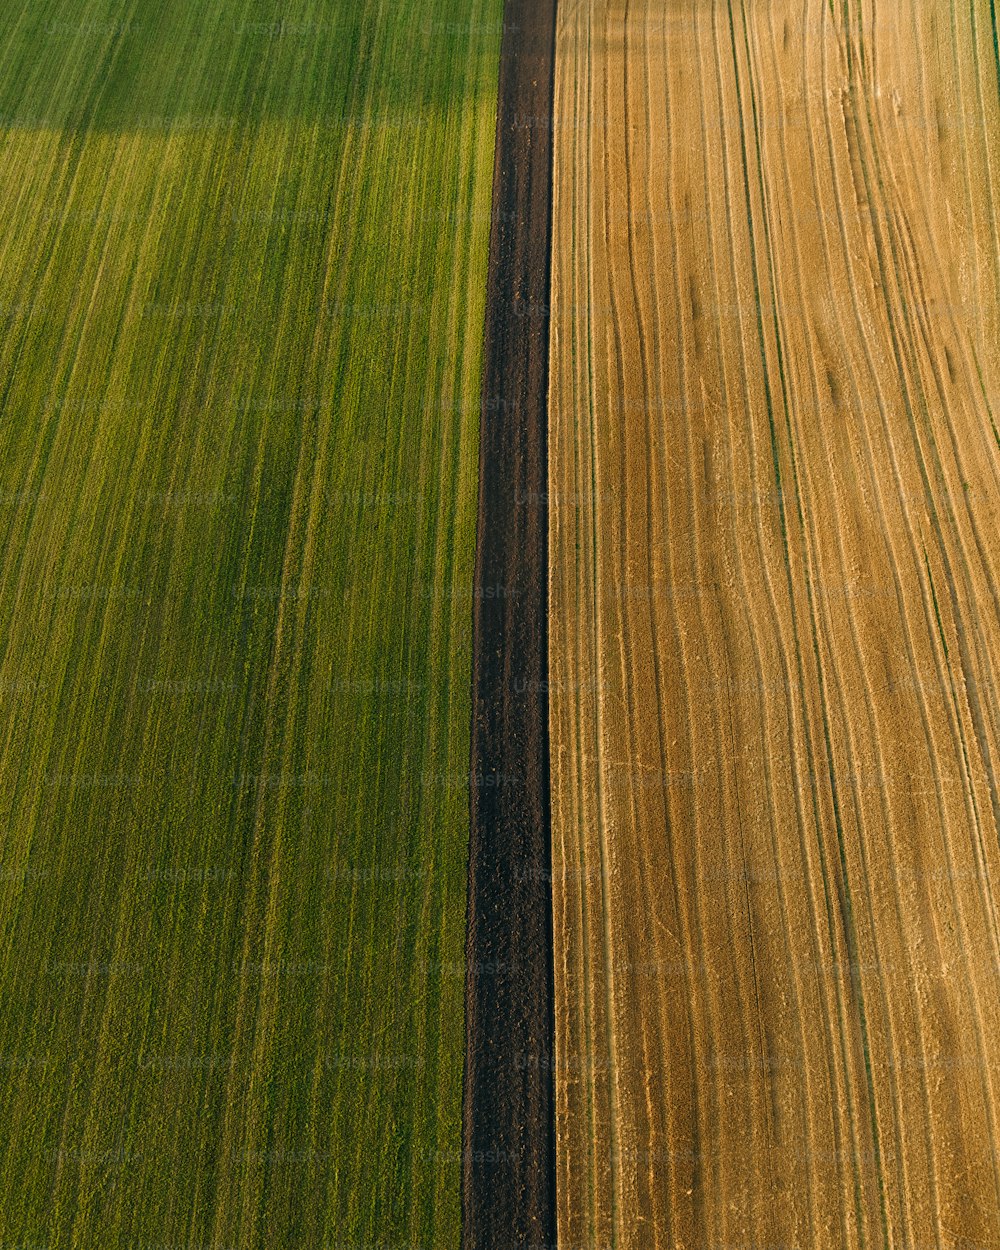 una veduta aerea di un campo agricolo con due file di erba verde